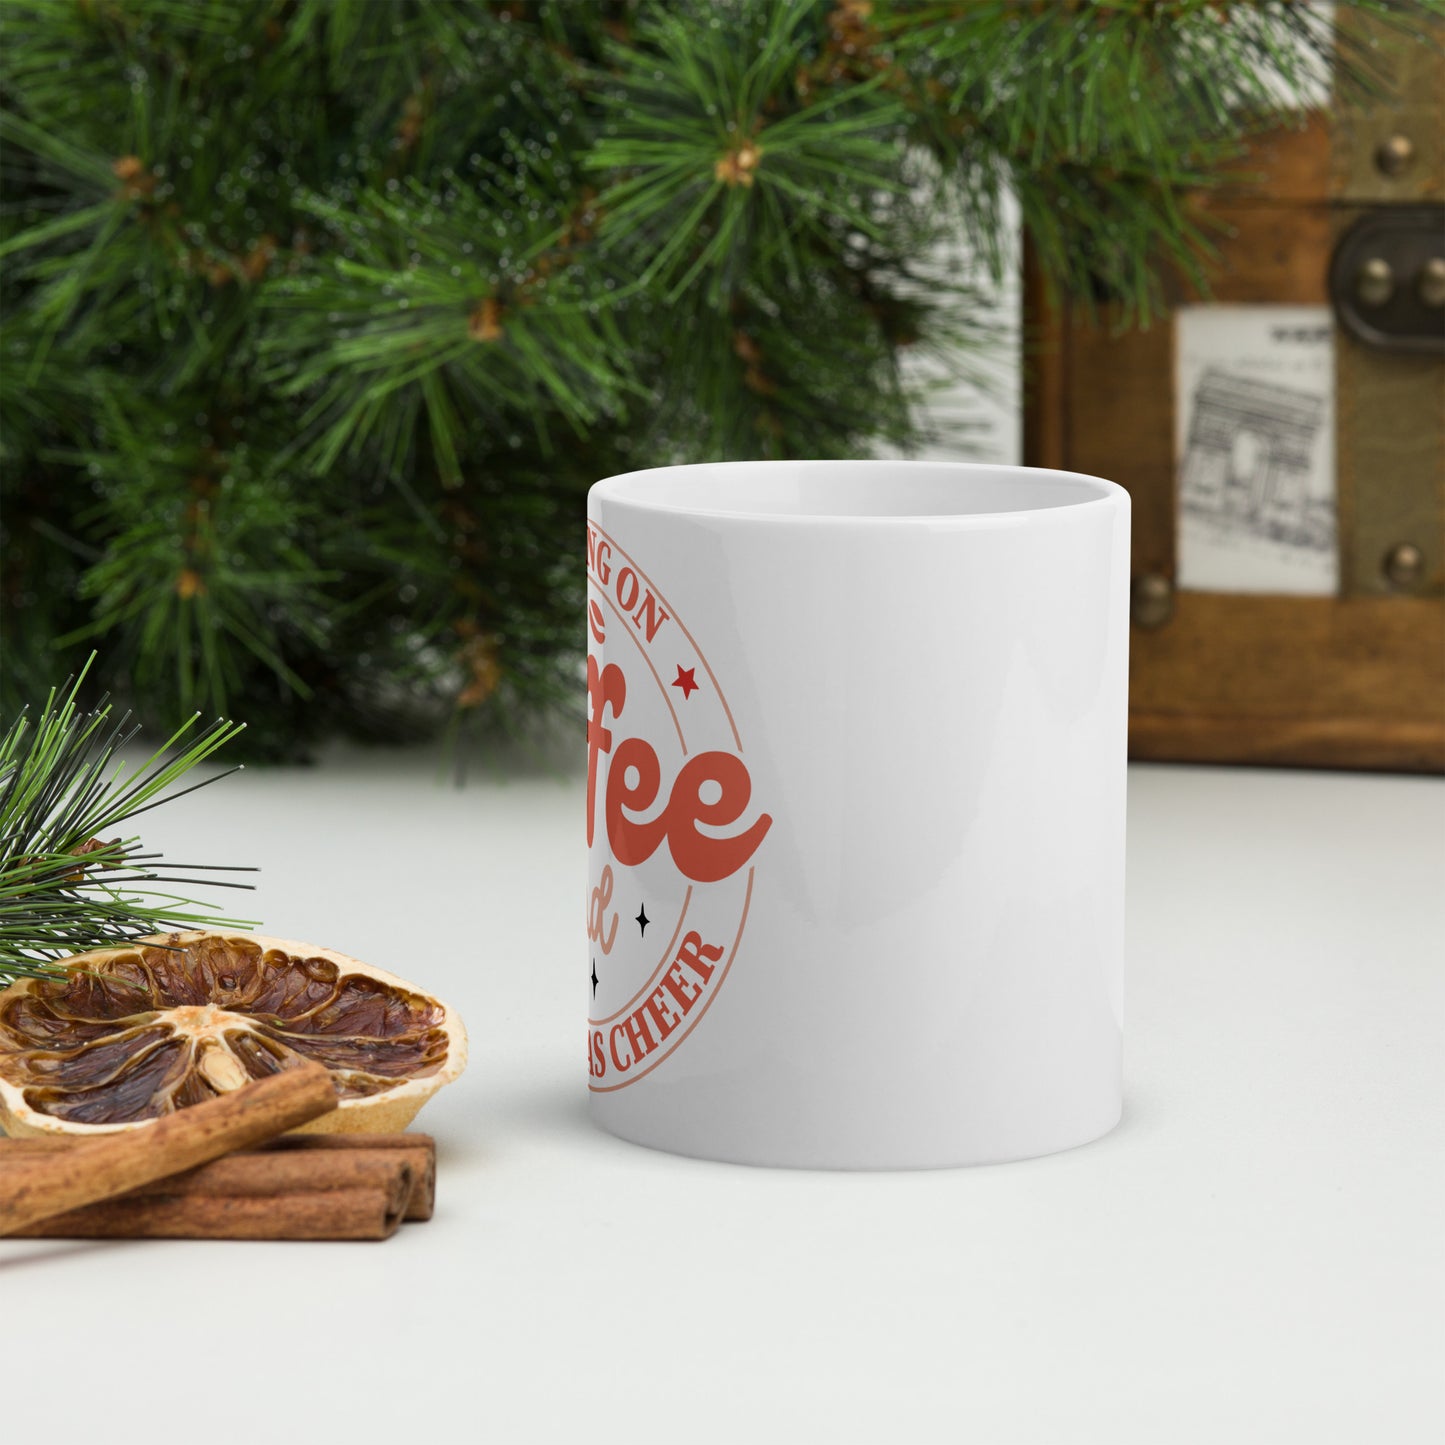 Coffee & Christmas mug